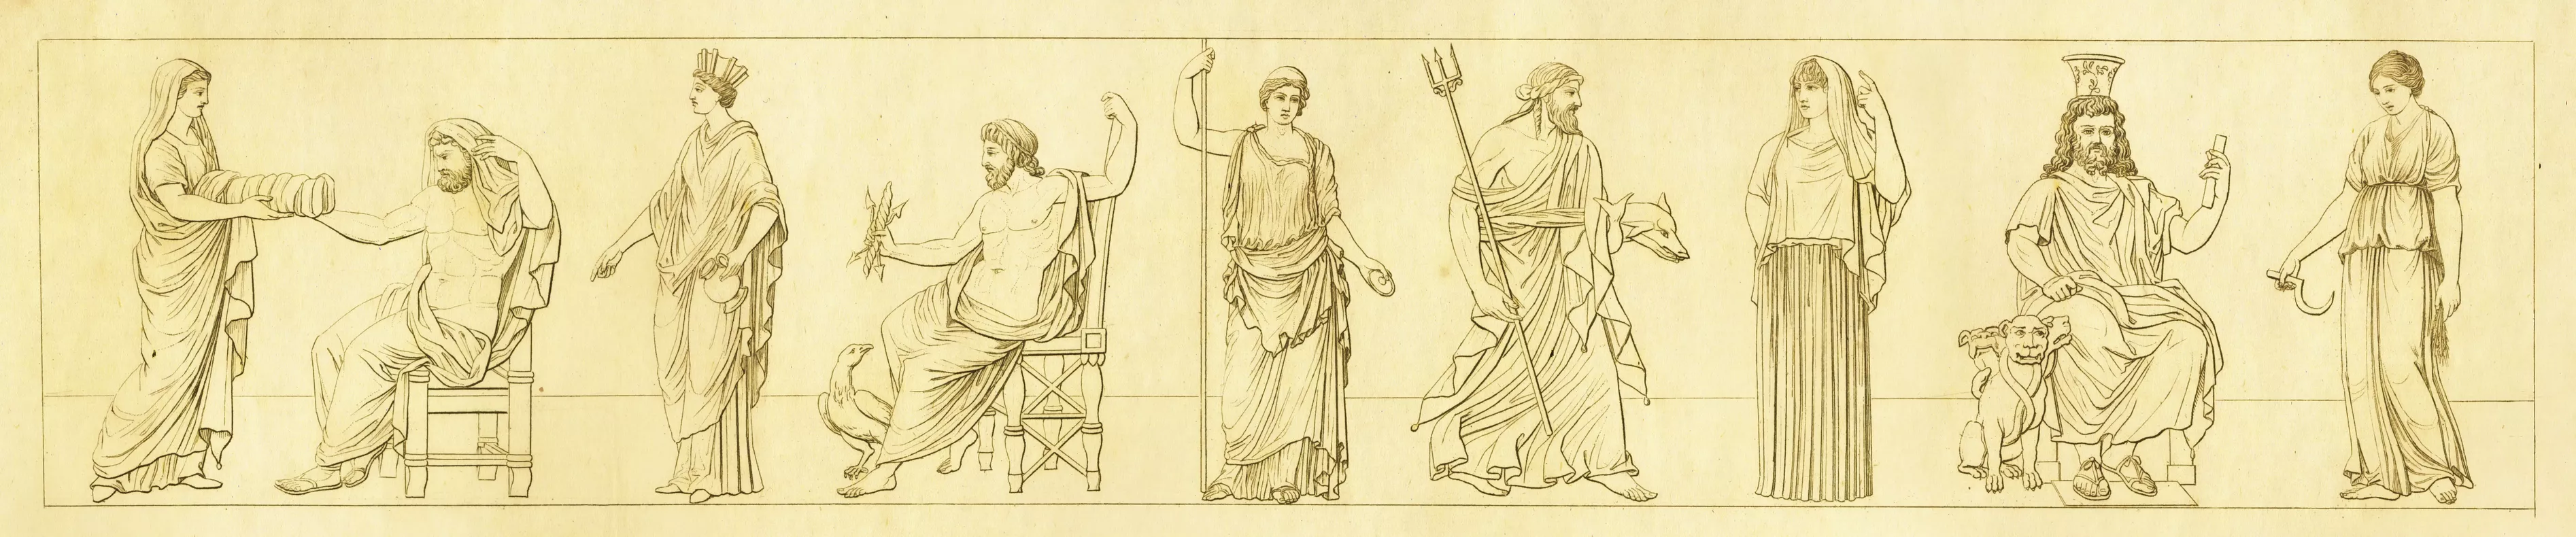 El llibre revisa els episodis principals de la mitologia grega